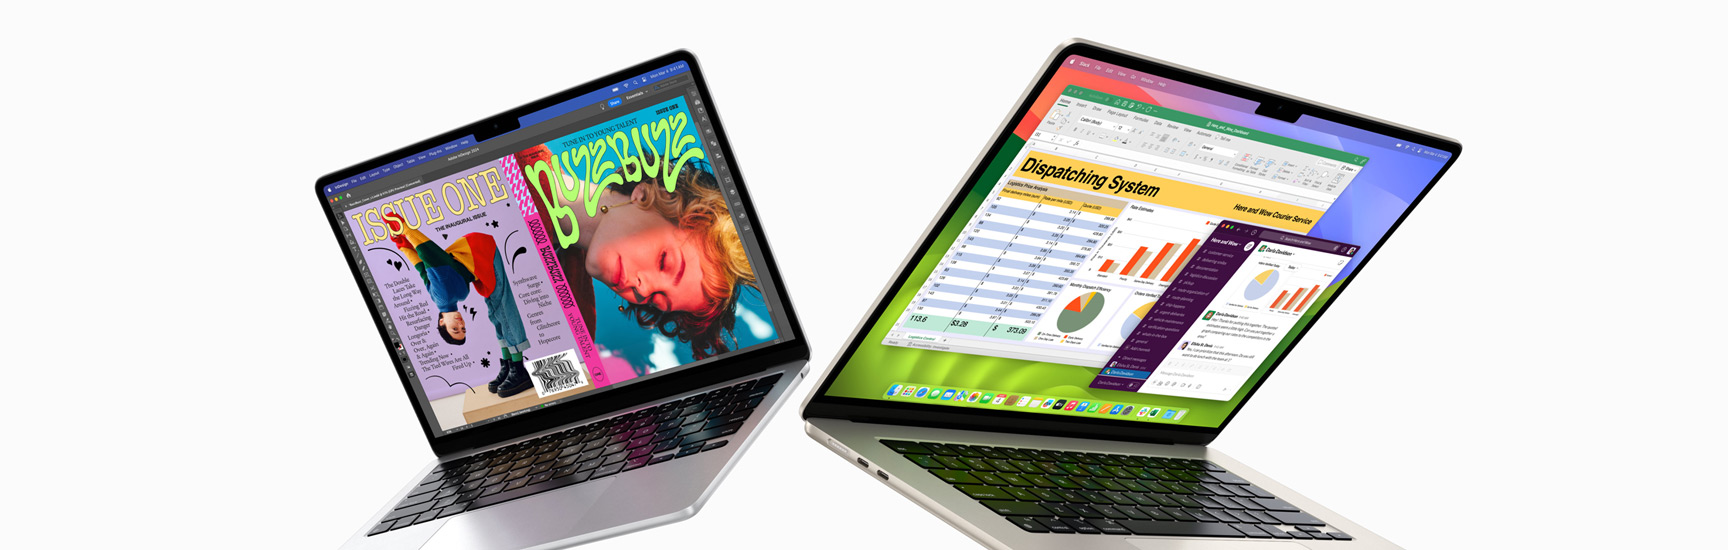 Een gedeeltelijk geopende 13-inch MacBook Air links en een 15-inch MacBook Air rechts. Op het 13-inch scherm is een kleurrijke tijdschriftcover te zien die is gemaakt met In Design. Op het 15-inch scherm zijn Microsoft Excel en Slack te zien.